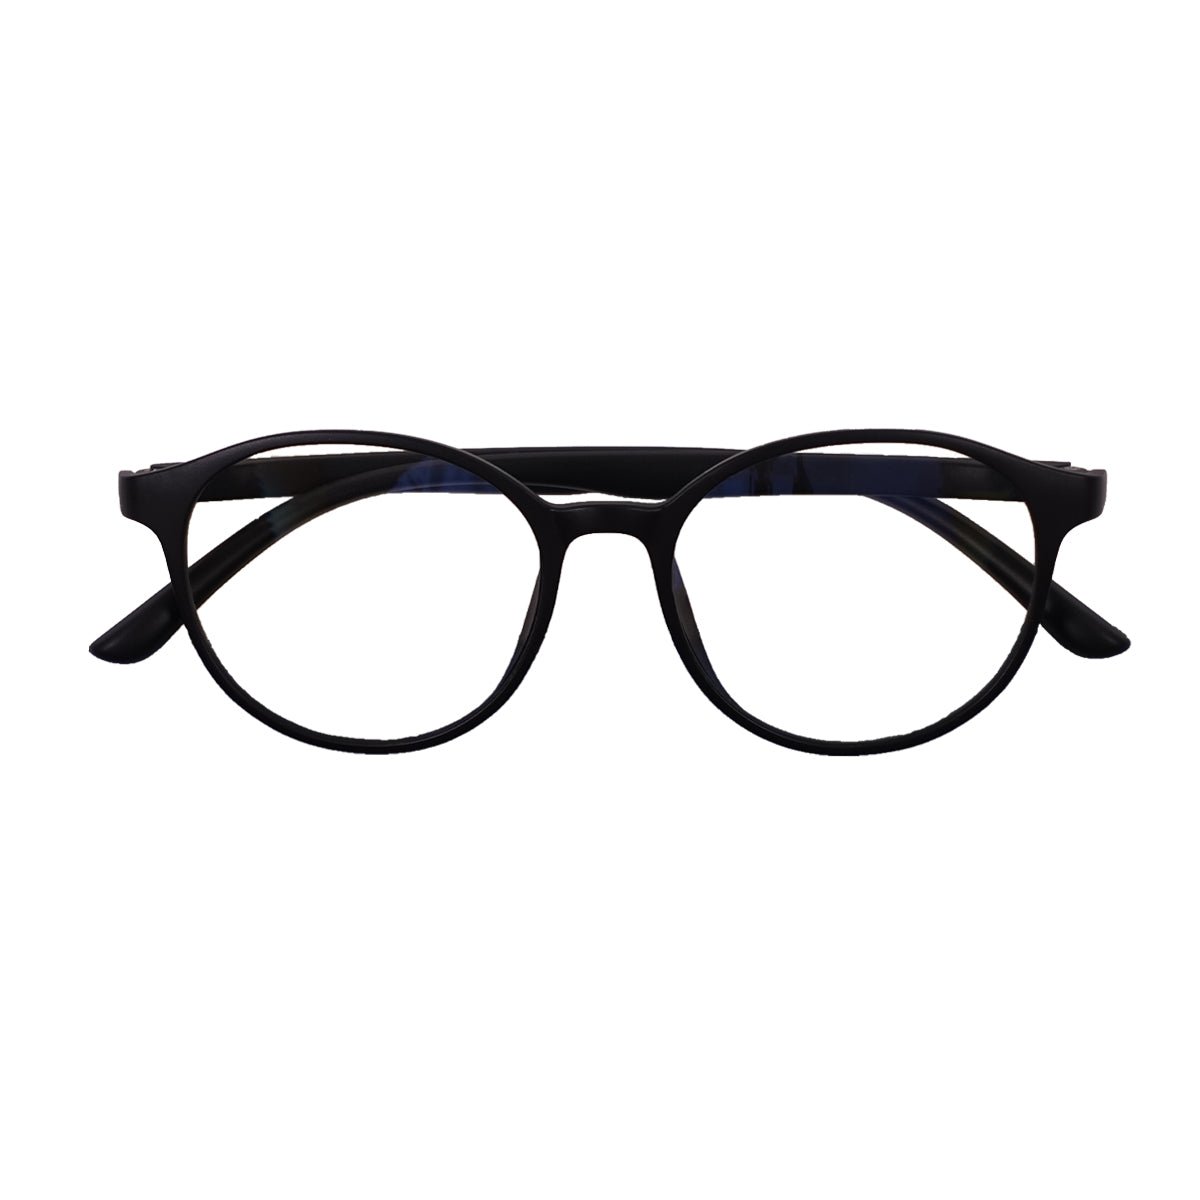 Epic Gamers Glasses V3 - Black - Store 974 | ستور ٩٧٤